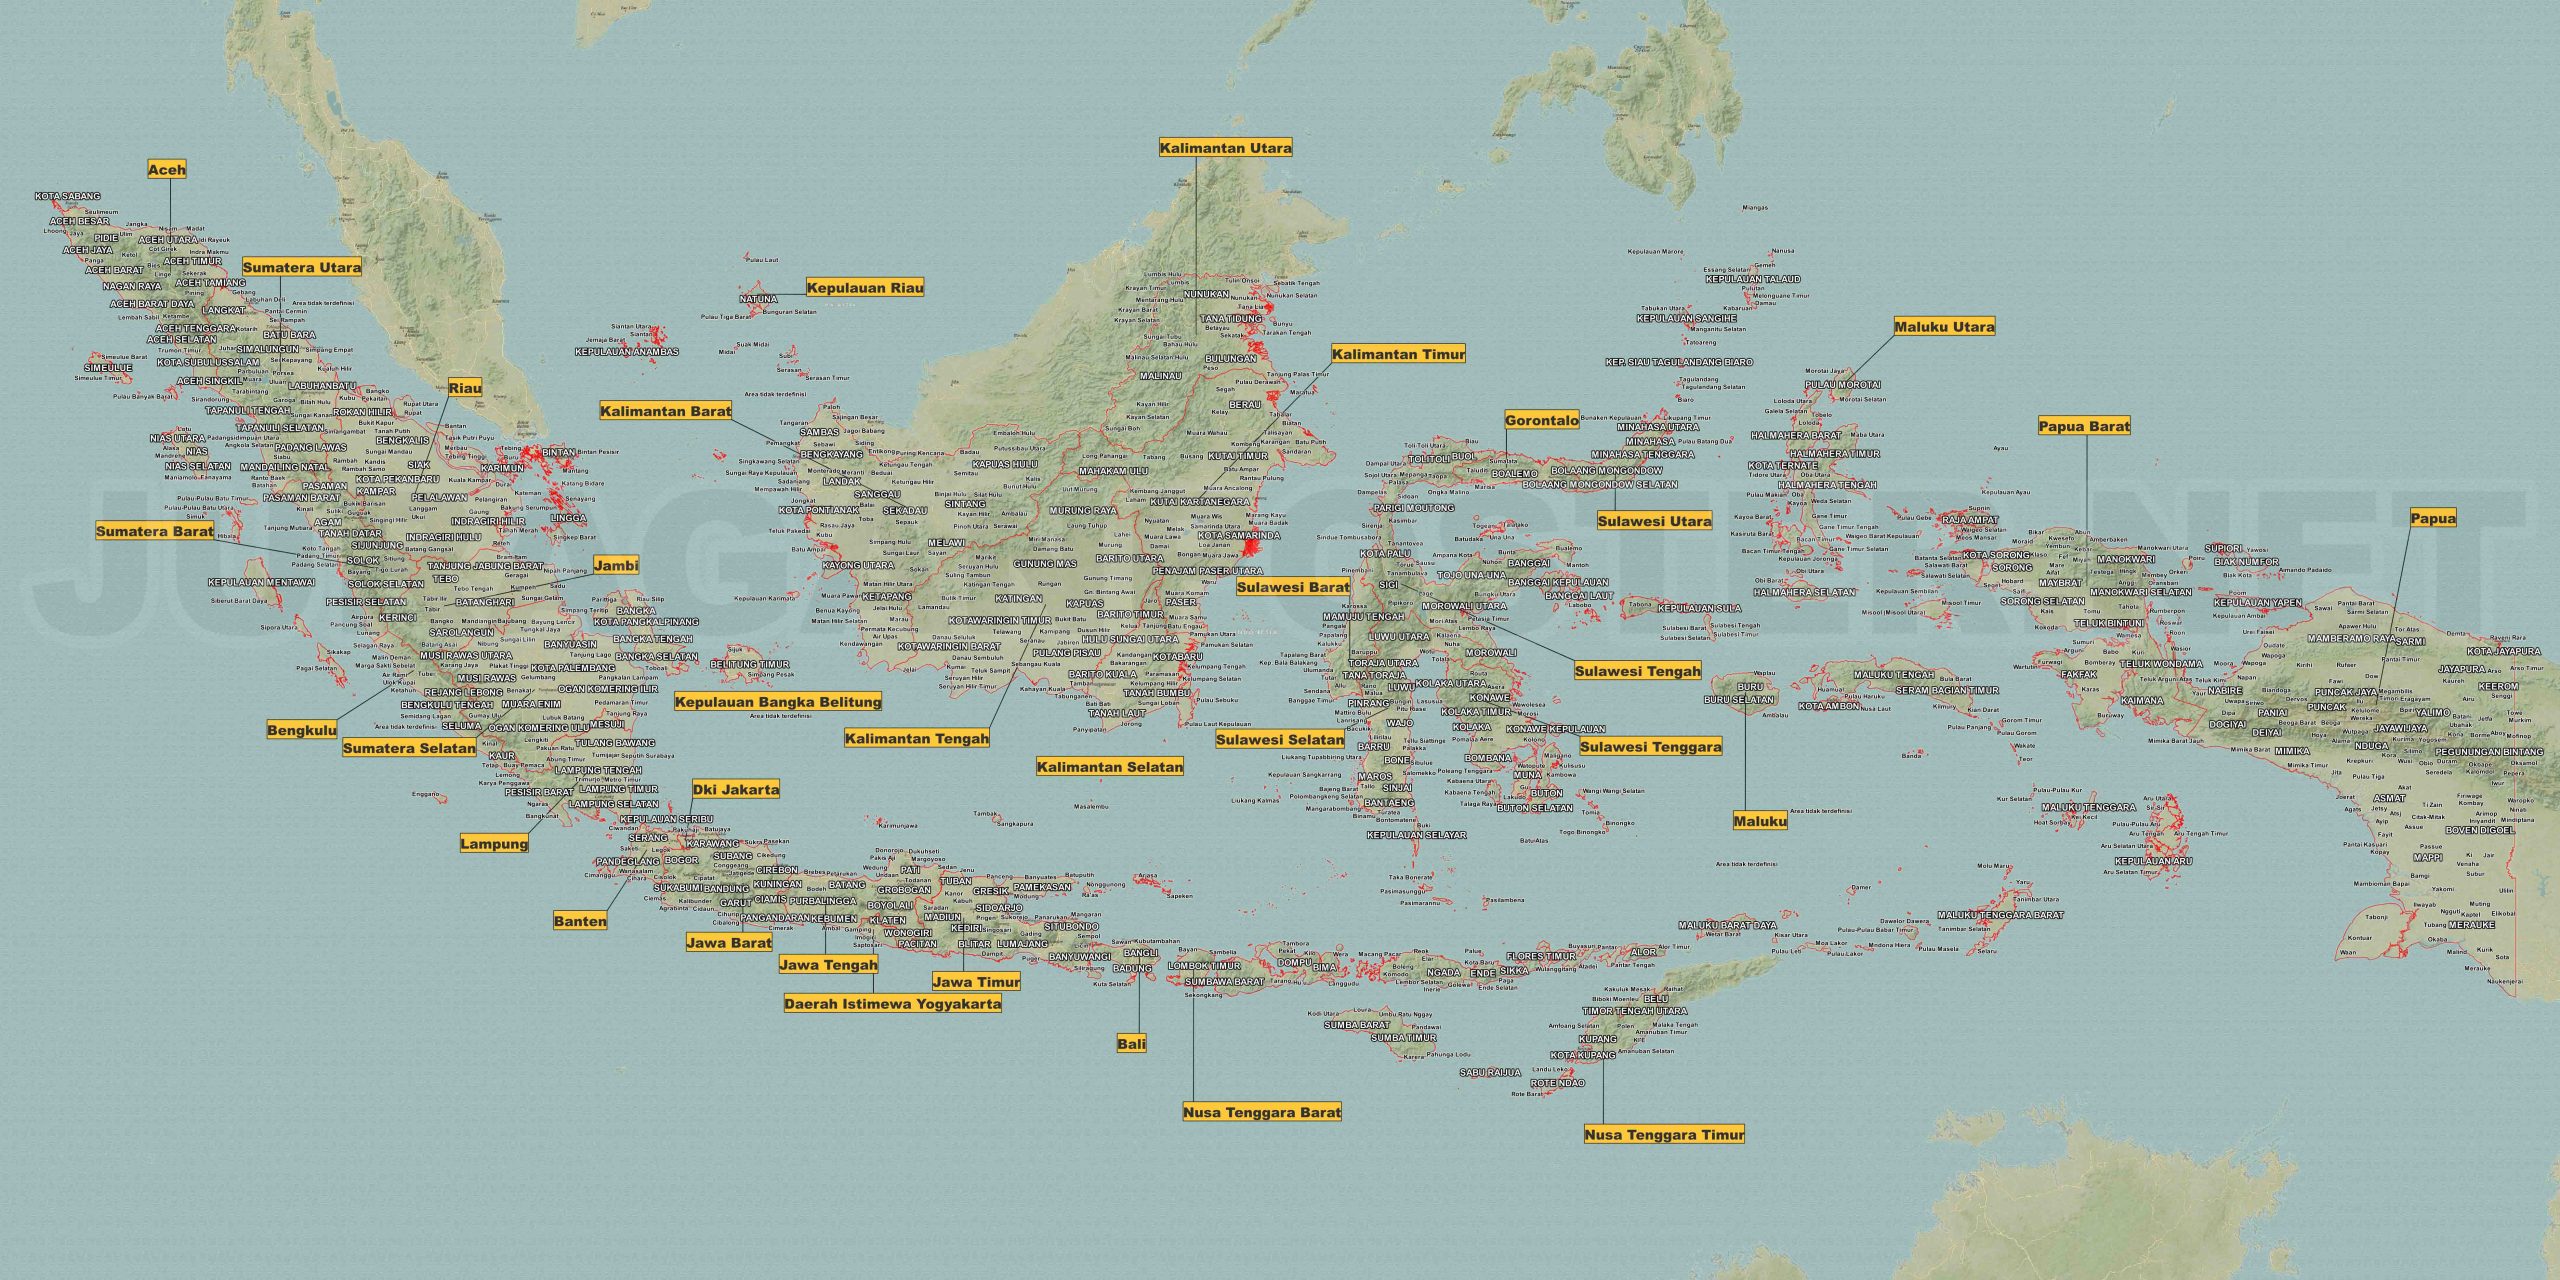 Contoh Gambar Peta Indonesia Sederhana: Inspirasi untuk Penciptaan Peta